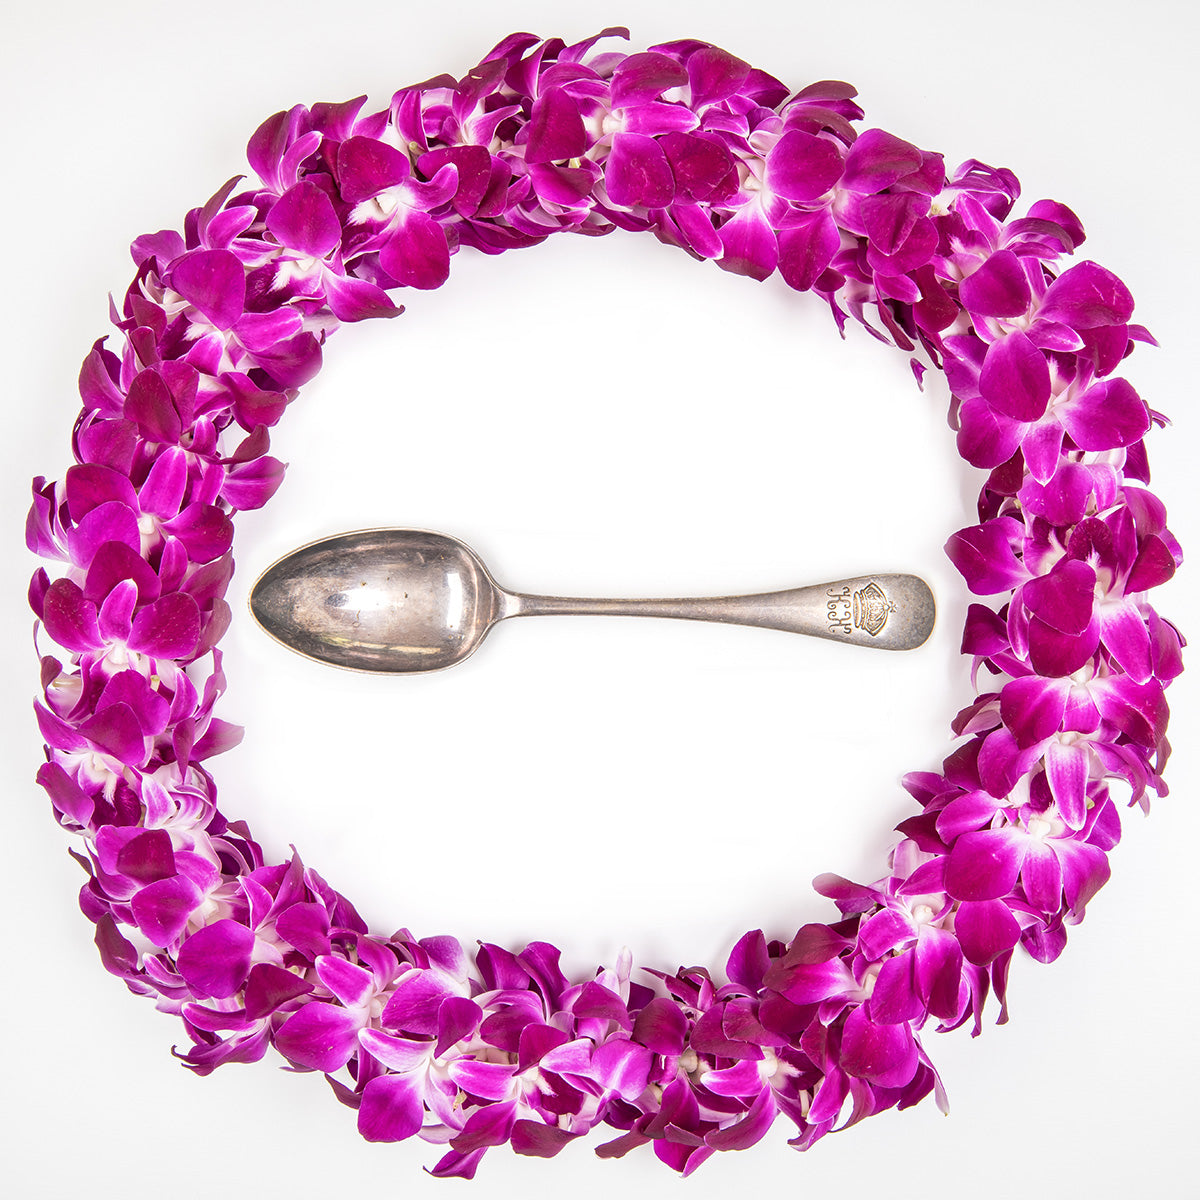 Historic Hawaiian silverware